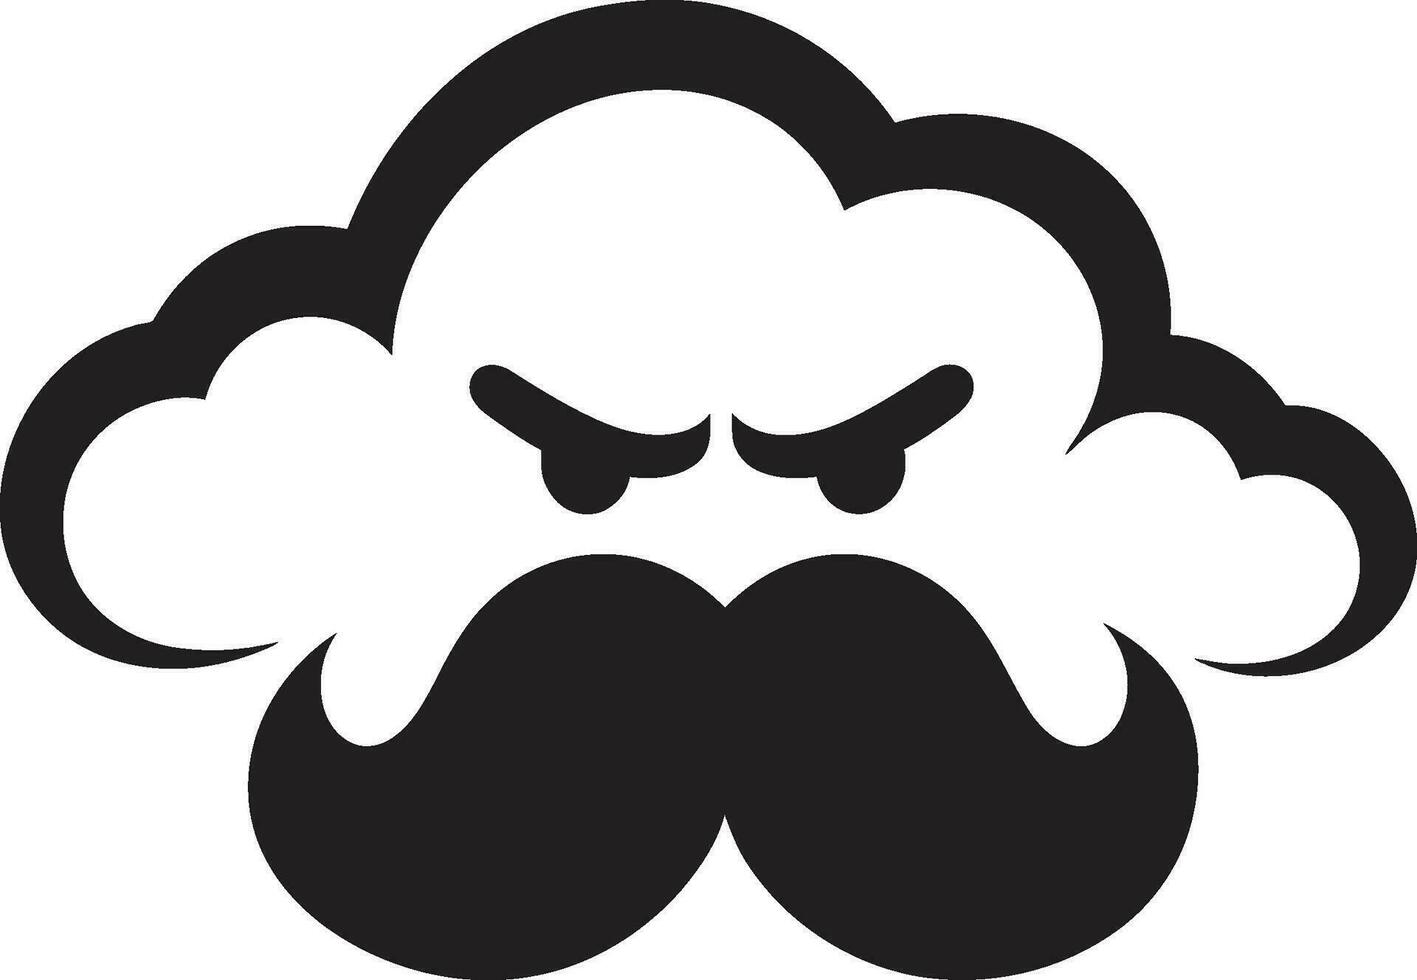 irato burrasca vettore arrabbiato nube icona fumante tempesta nero nube cartone animato emblema